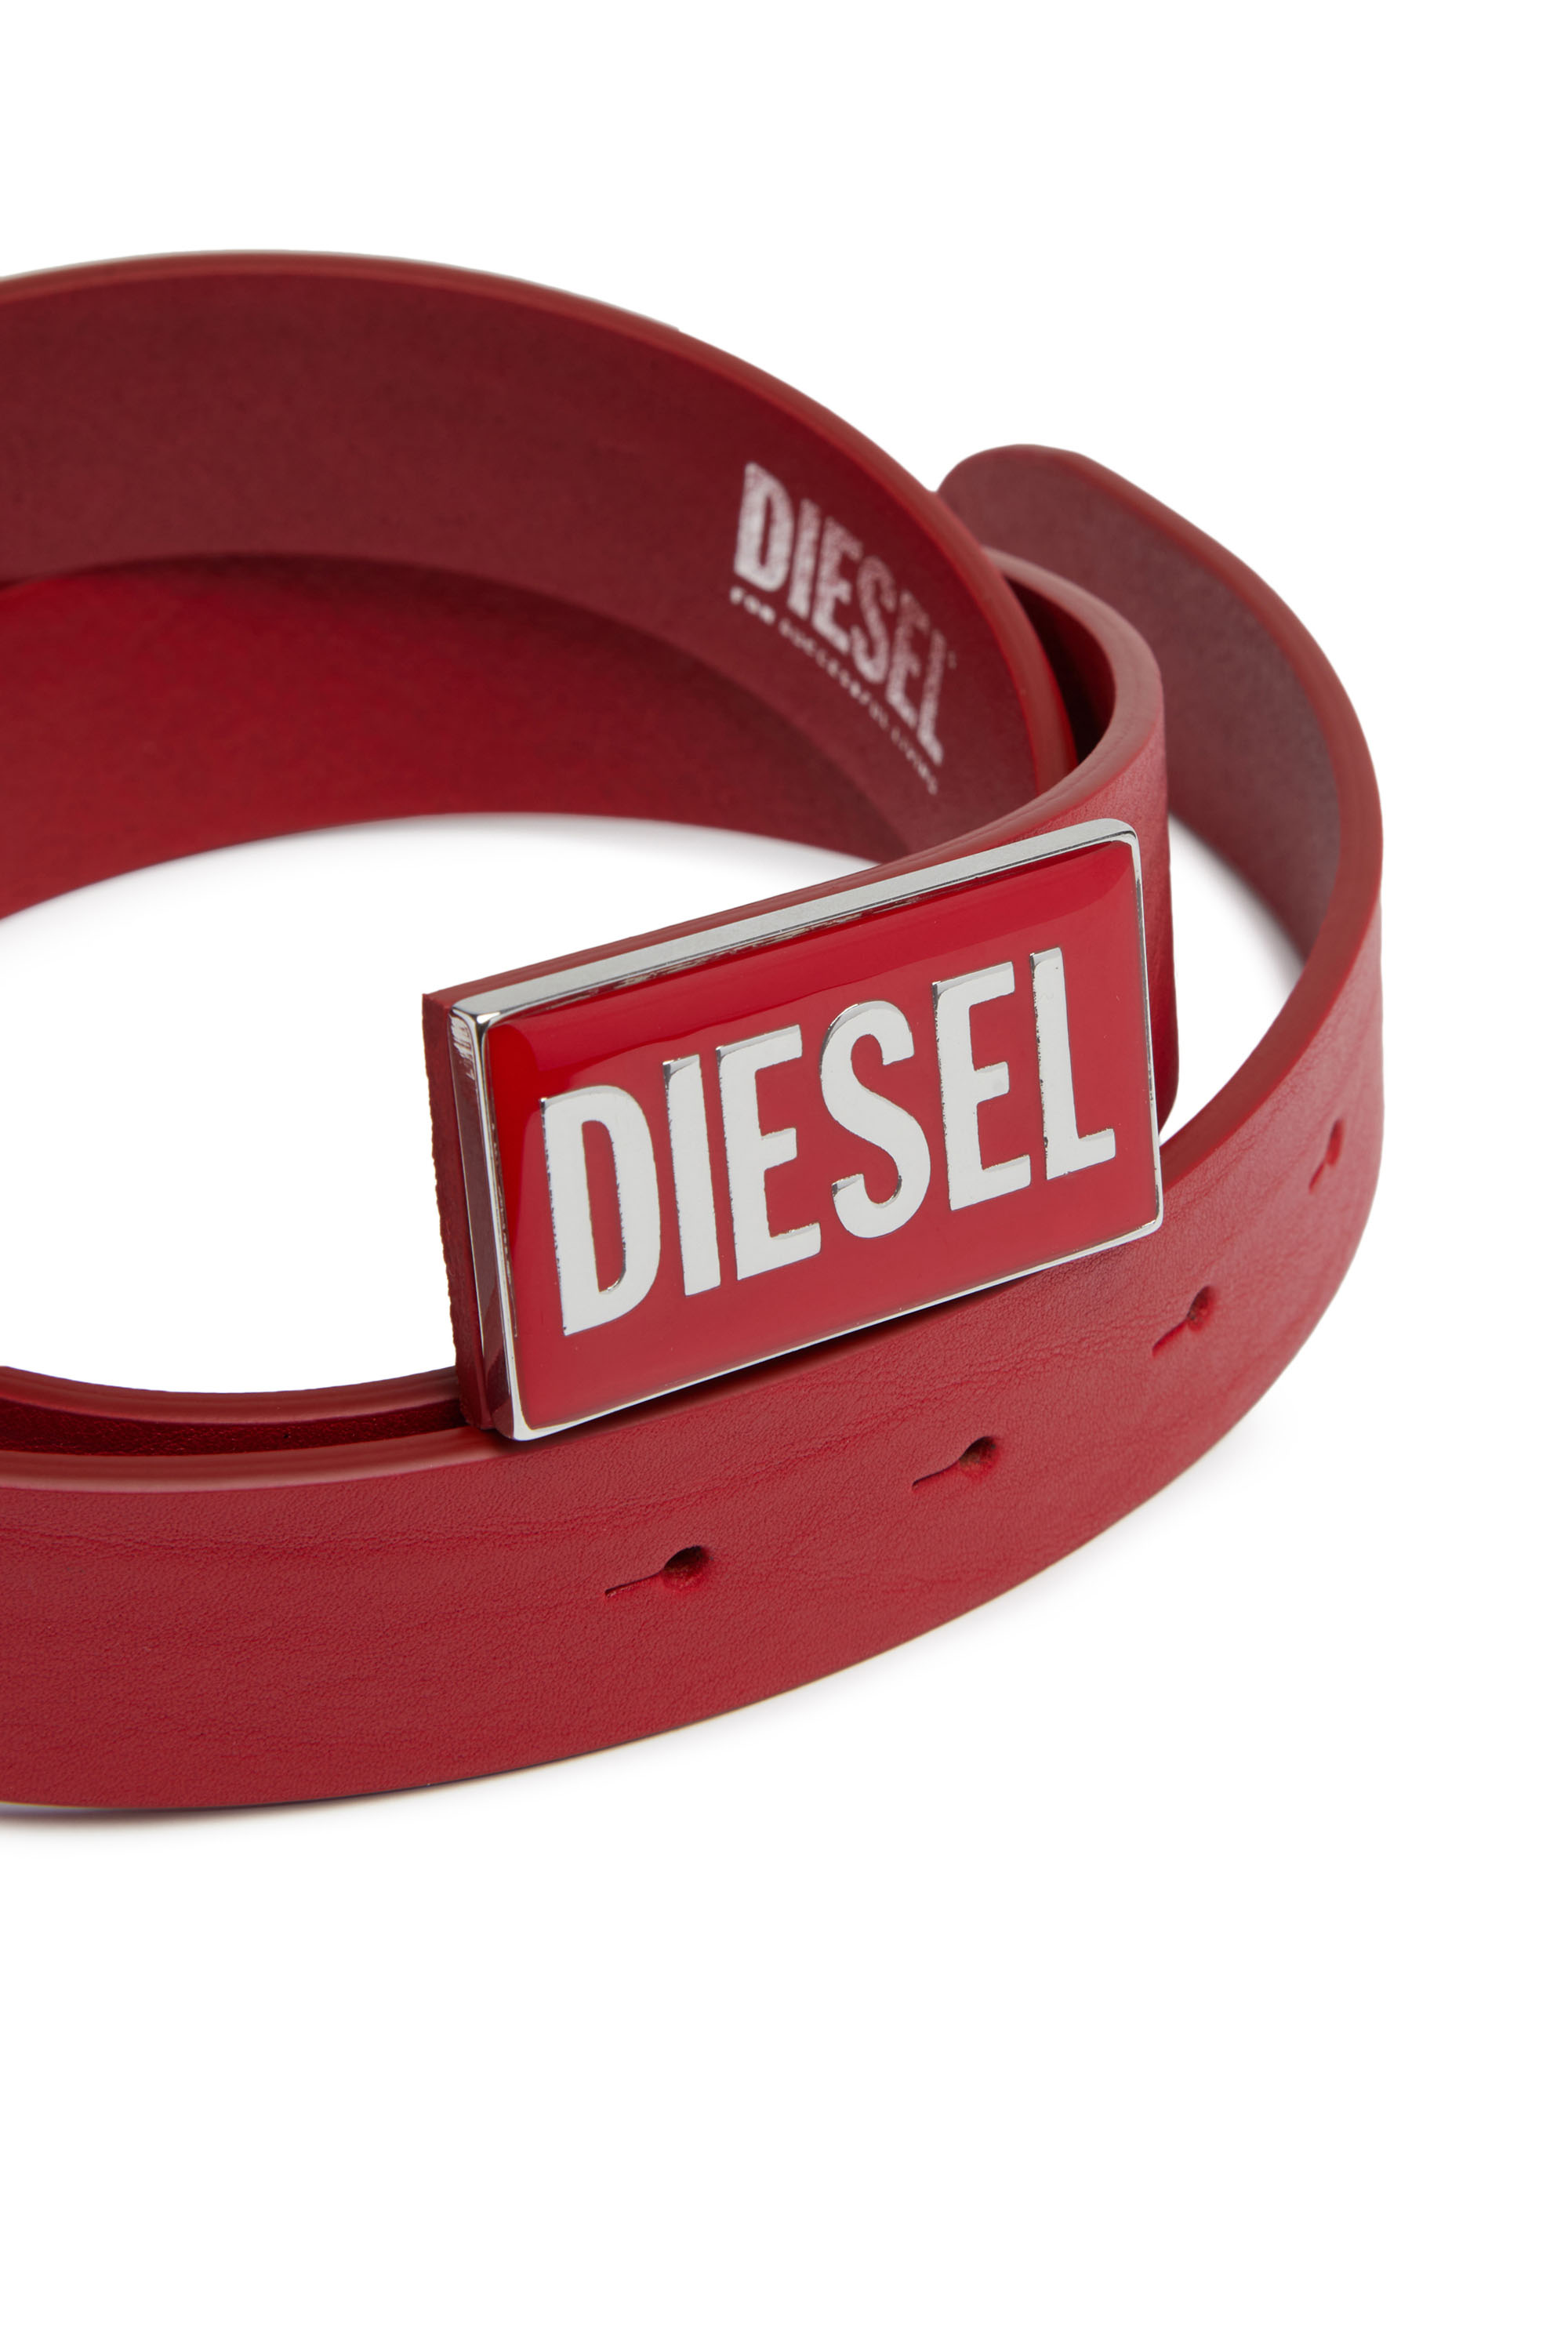 Diesel - B-GLOSSY, Rouge - Image 3